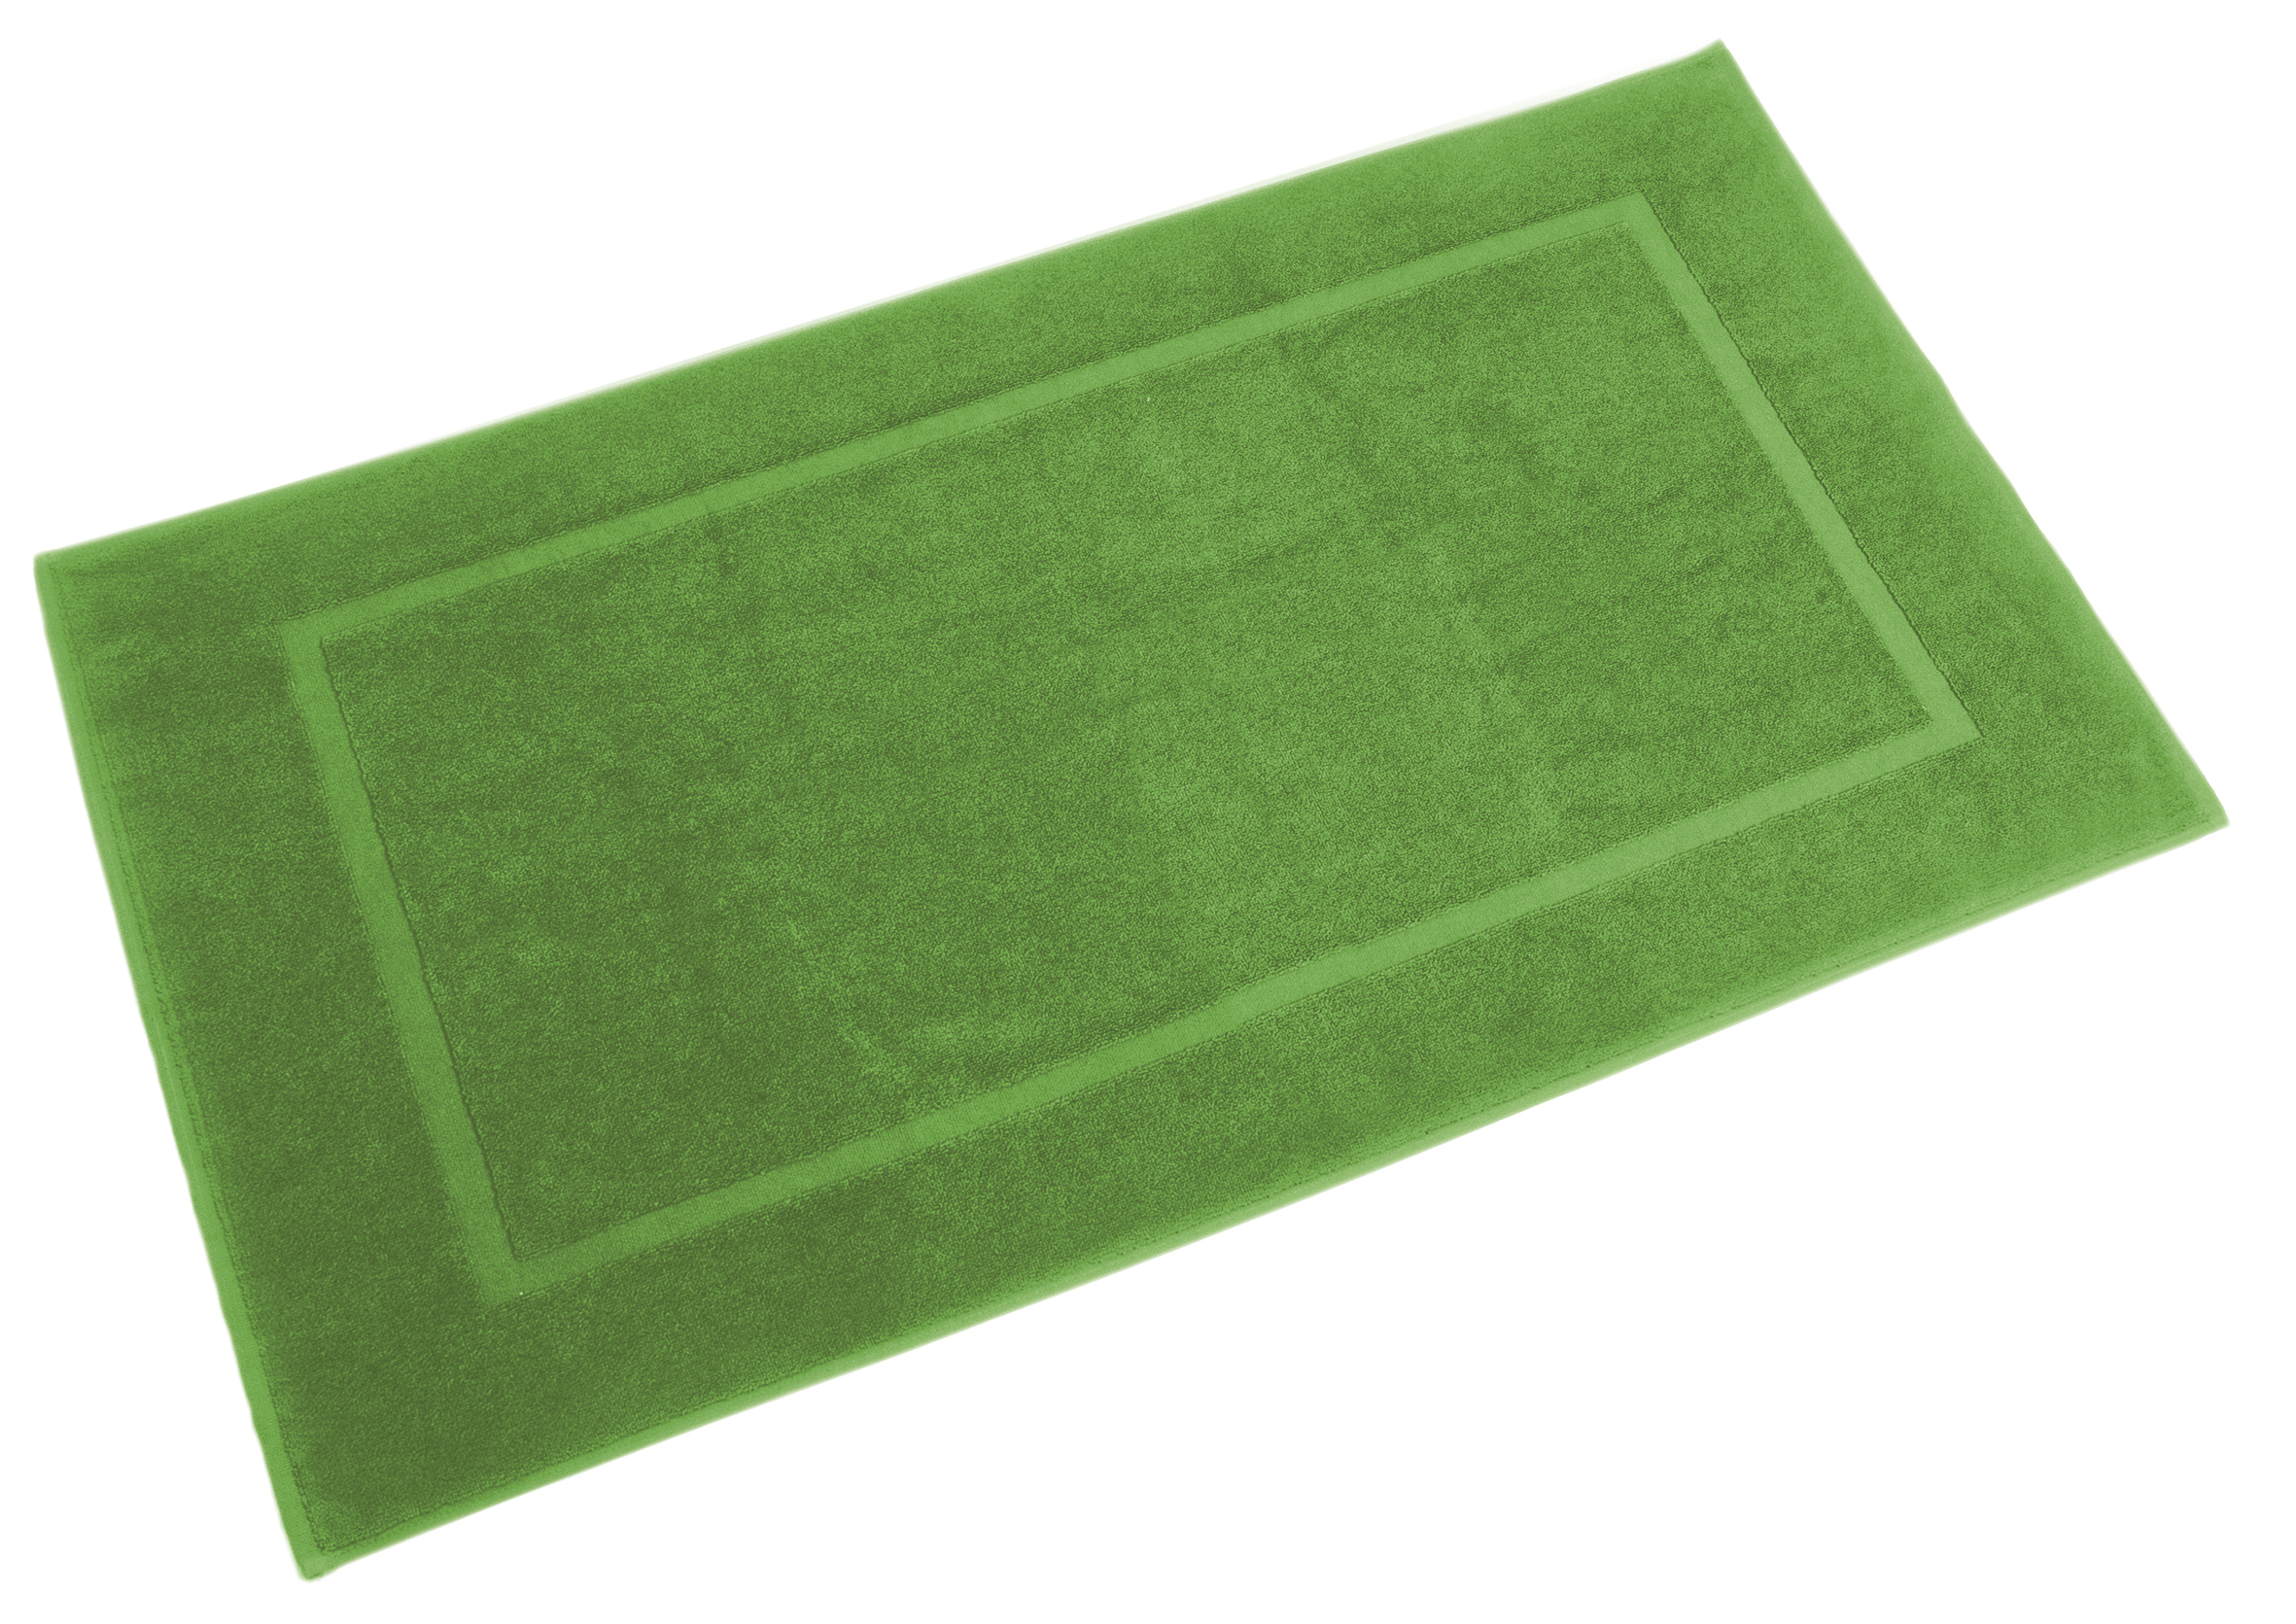 Bath carpet 60x110cm, picart green